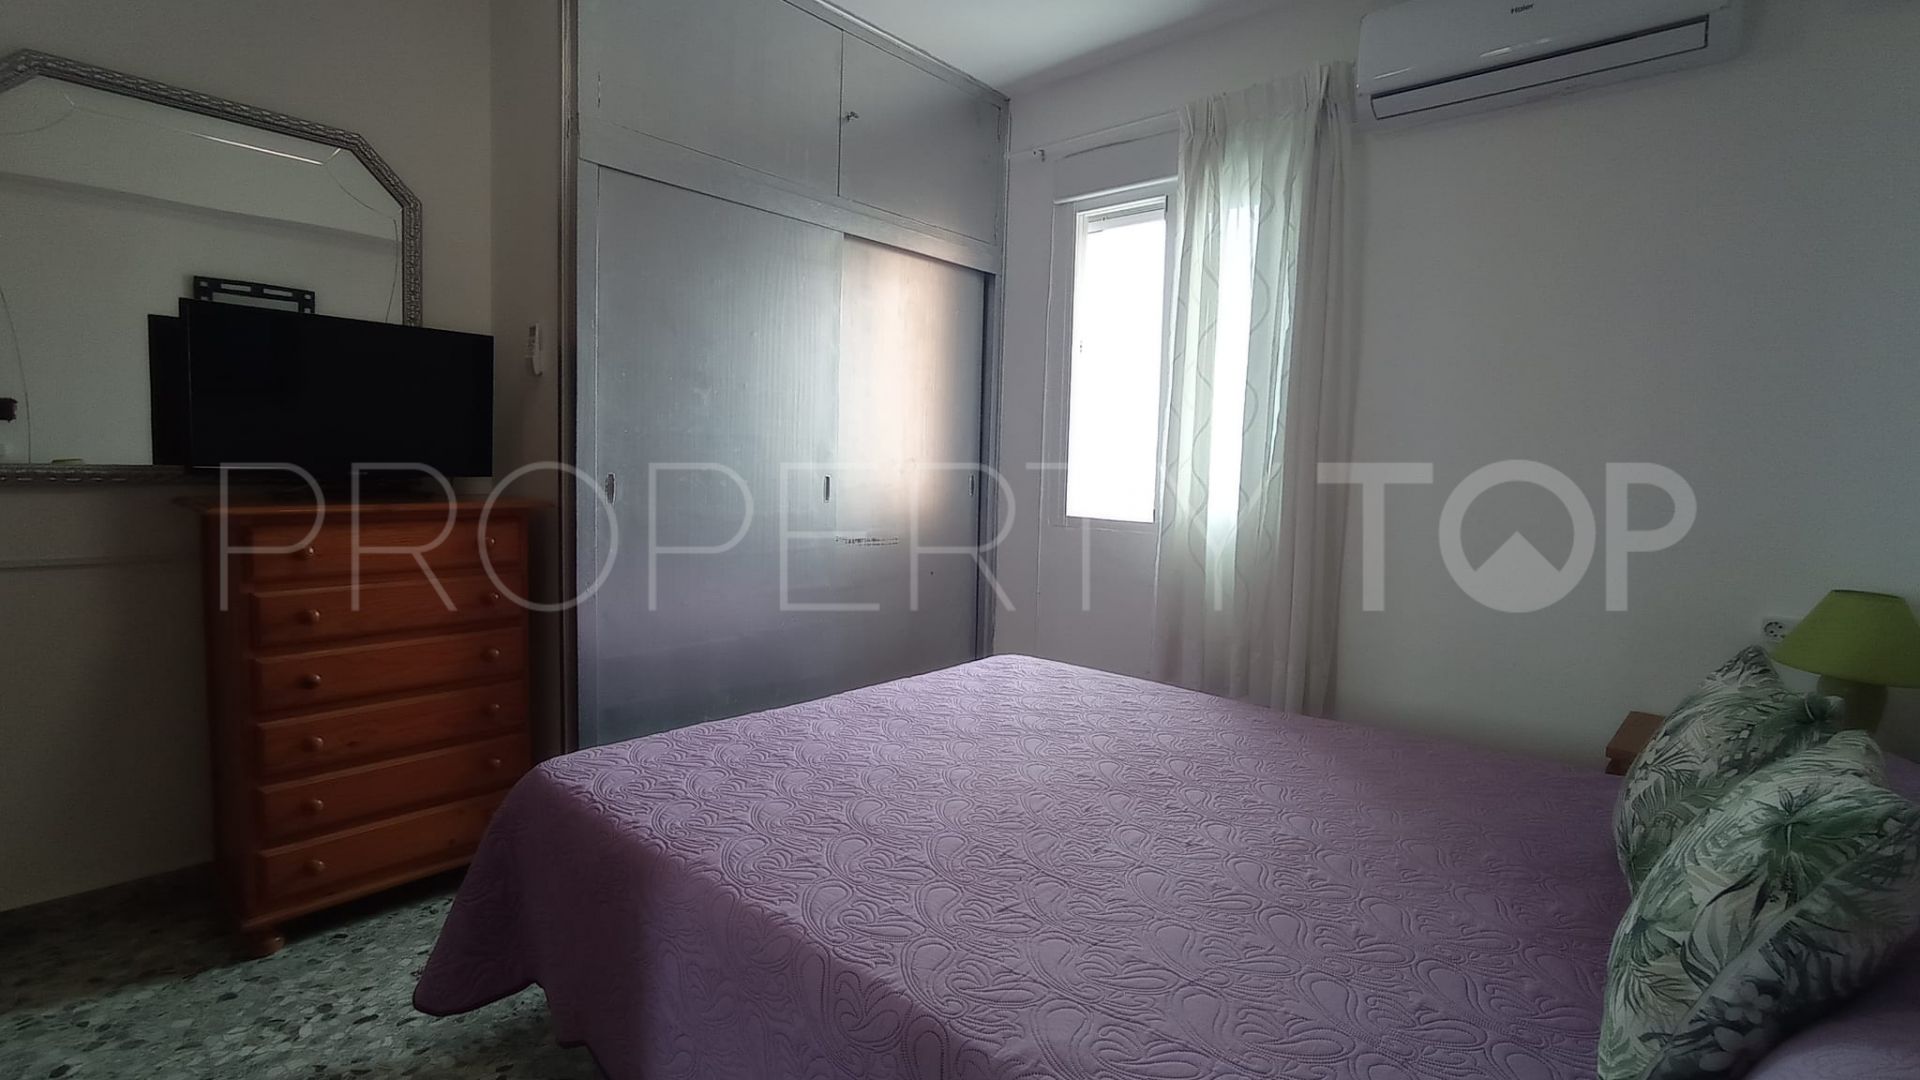 Apartamento en venta en Torremolinos con 1 dormitorio